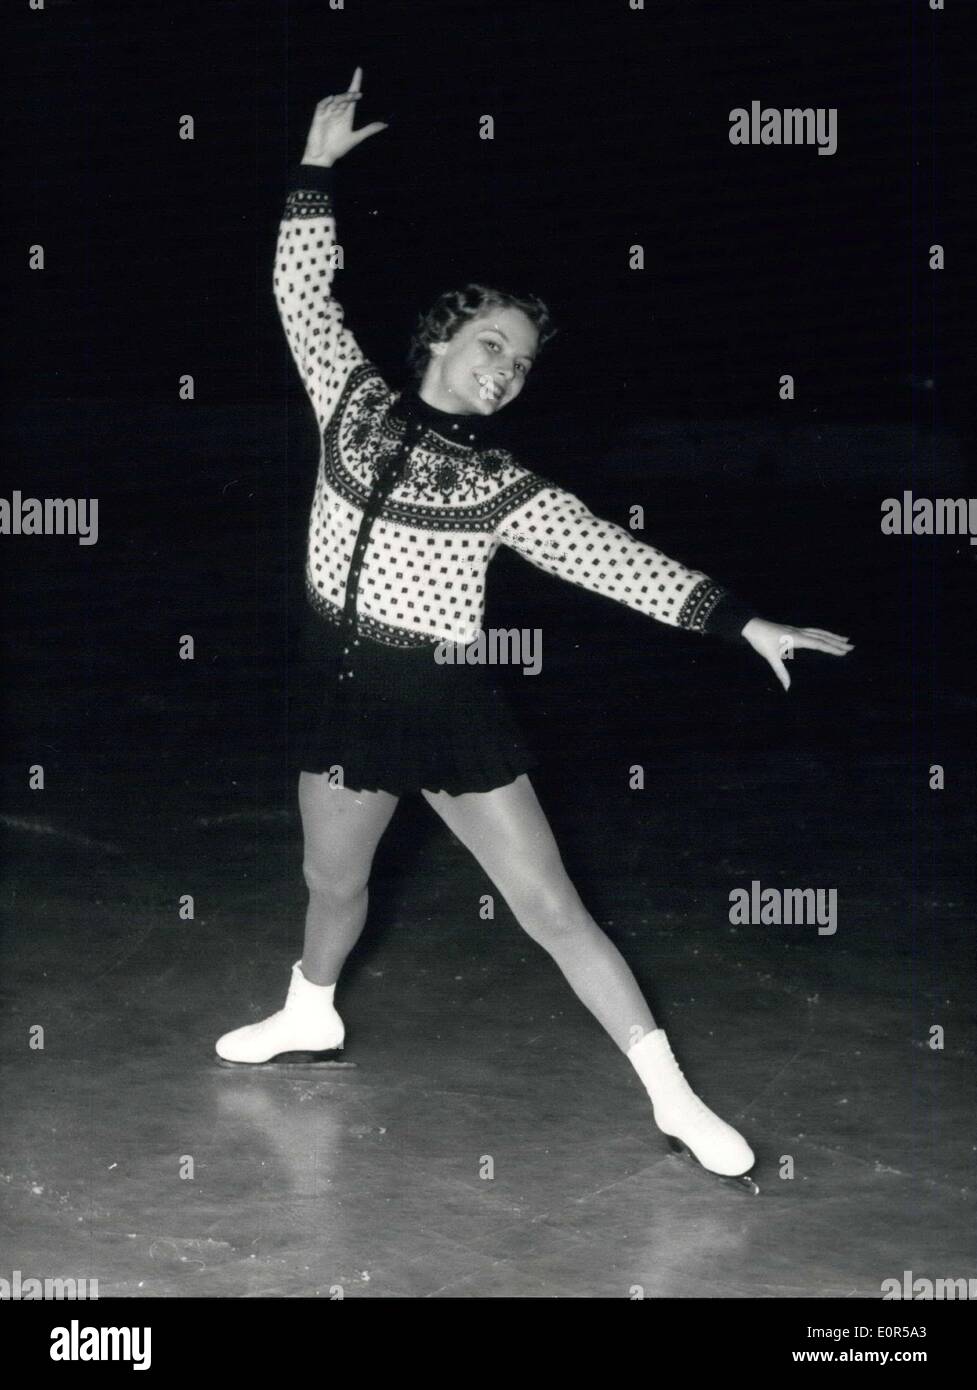 Febbraio 15, 1958 - Carol Heiss (USA) vince le donne del mondo di pattinaggio campionato: il pattinatore americano Carol Heiss, già mondiali di campione che ha vinto il titolo di nuovo presso il Palais des Sports, Parigi. Foto Stock